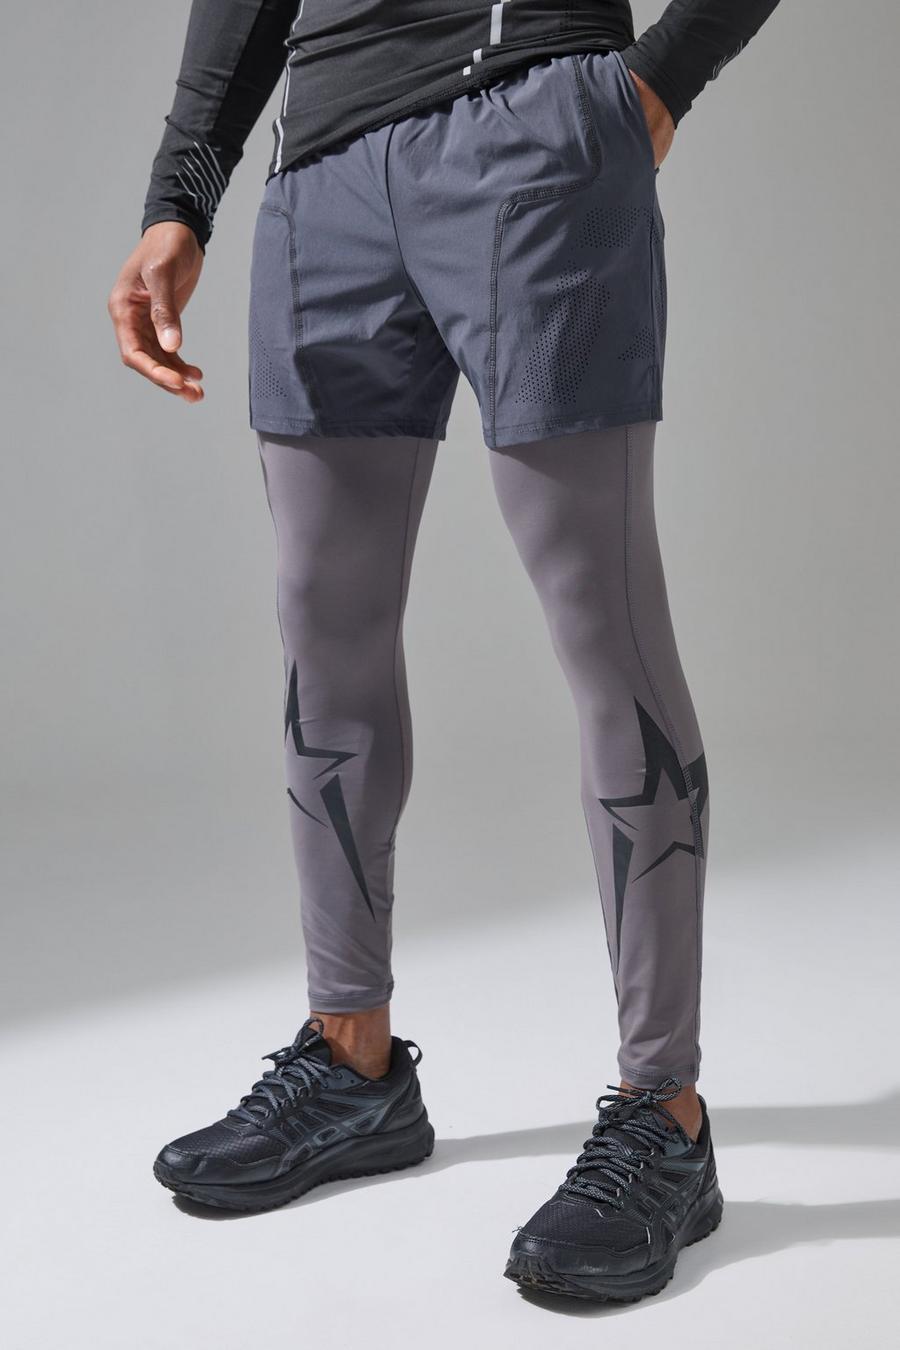 Pantalón corto de tela elástica con estampado Gunna Active, Charcoal